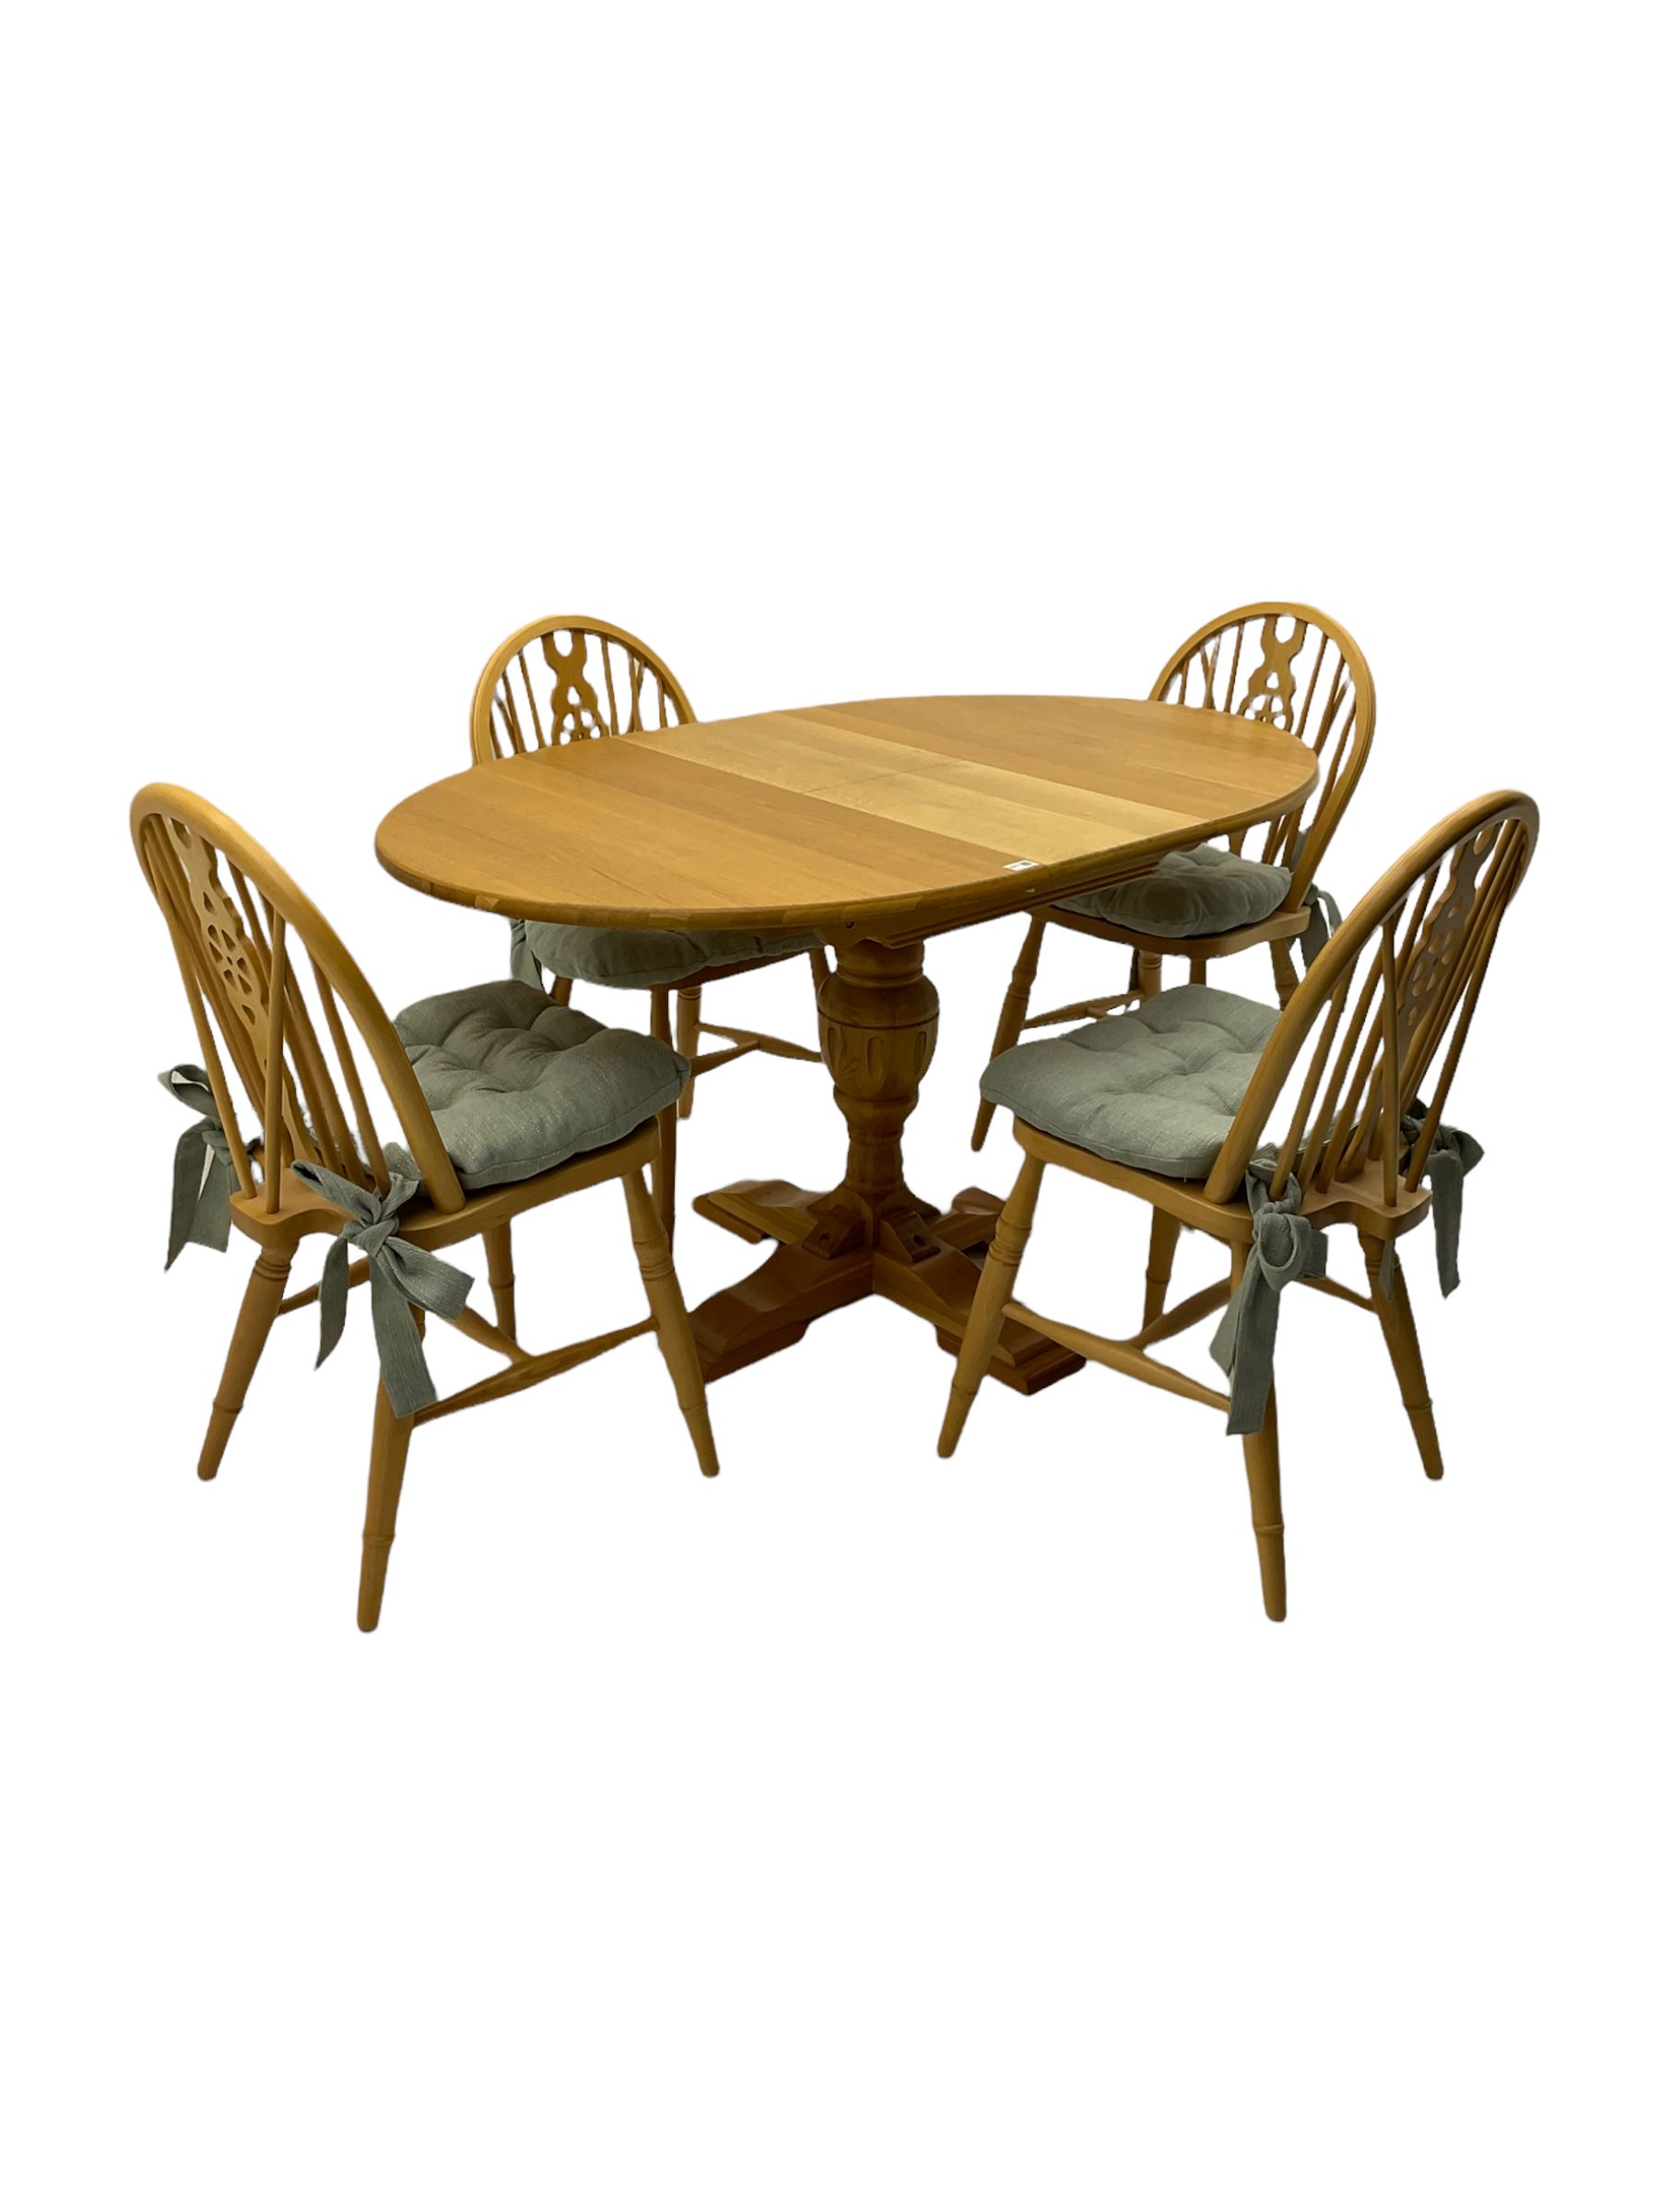 Light oak oval extending dining table